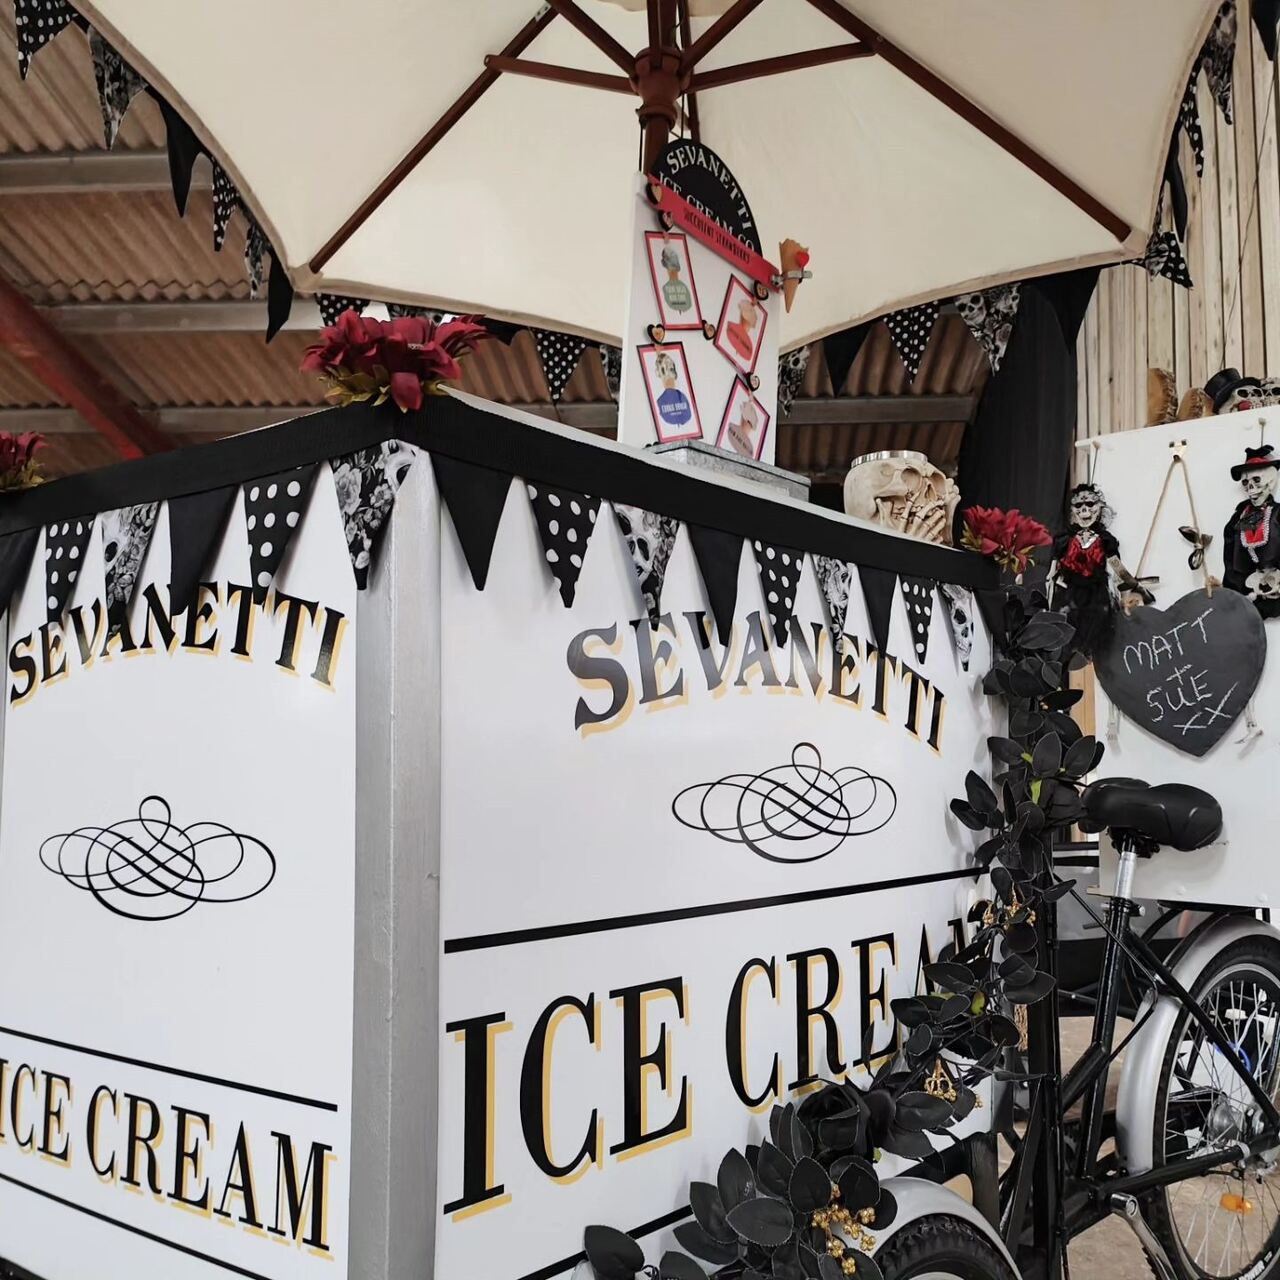 Sevanetti Ice Cream Bikes Black, White and Skulls decoration sets